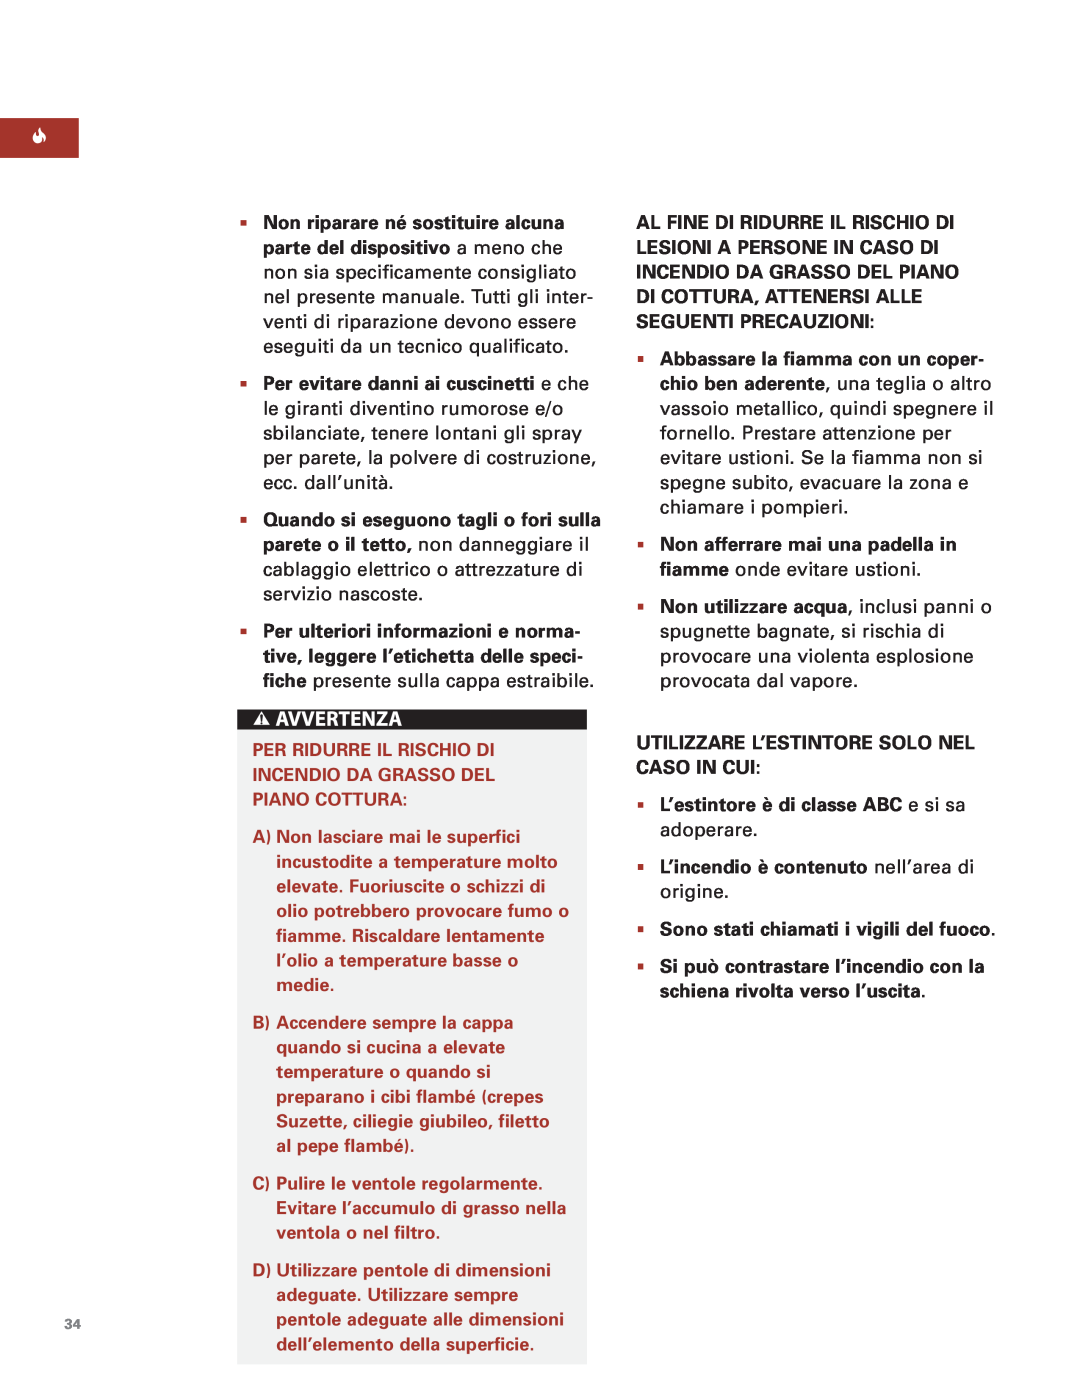 Sub-Zero Downdraft Ventilation manual Per Ridurre Il Rischio Di Incendio Da Grasso Del Piano Cottura 